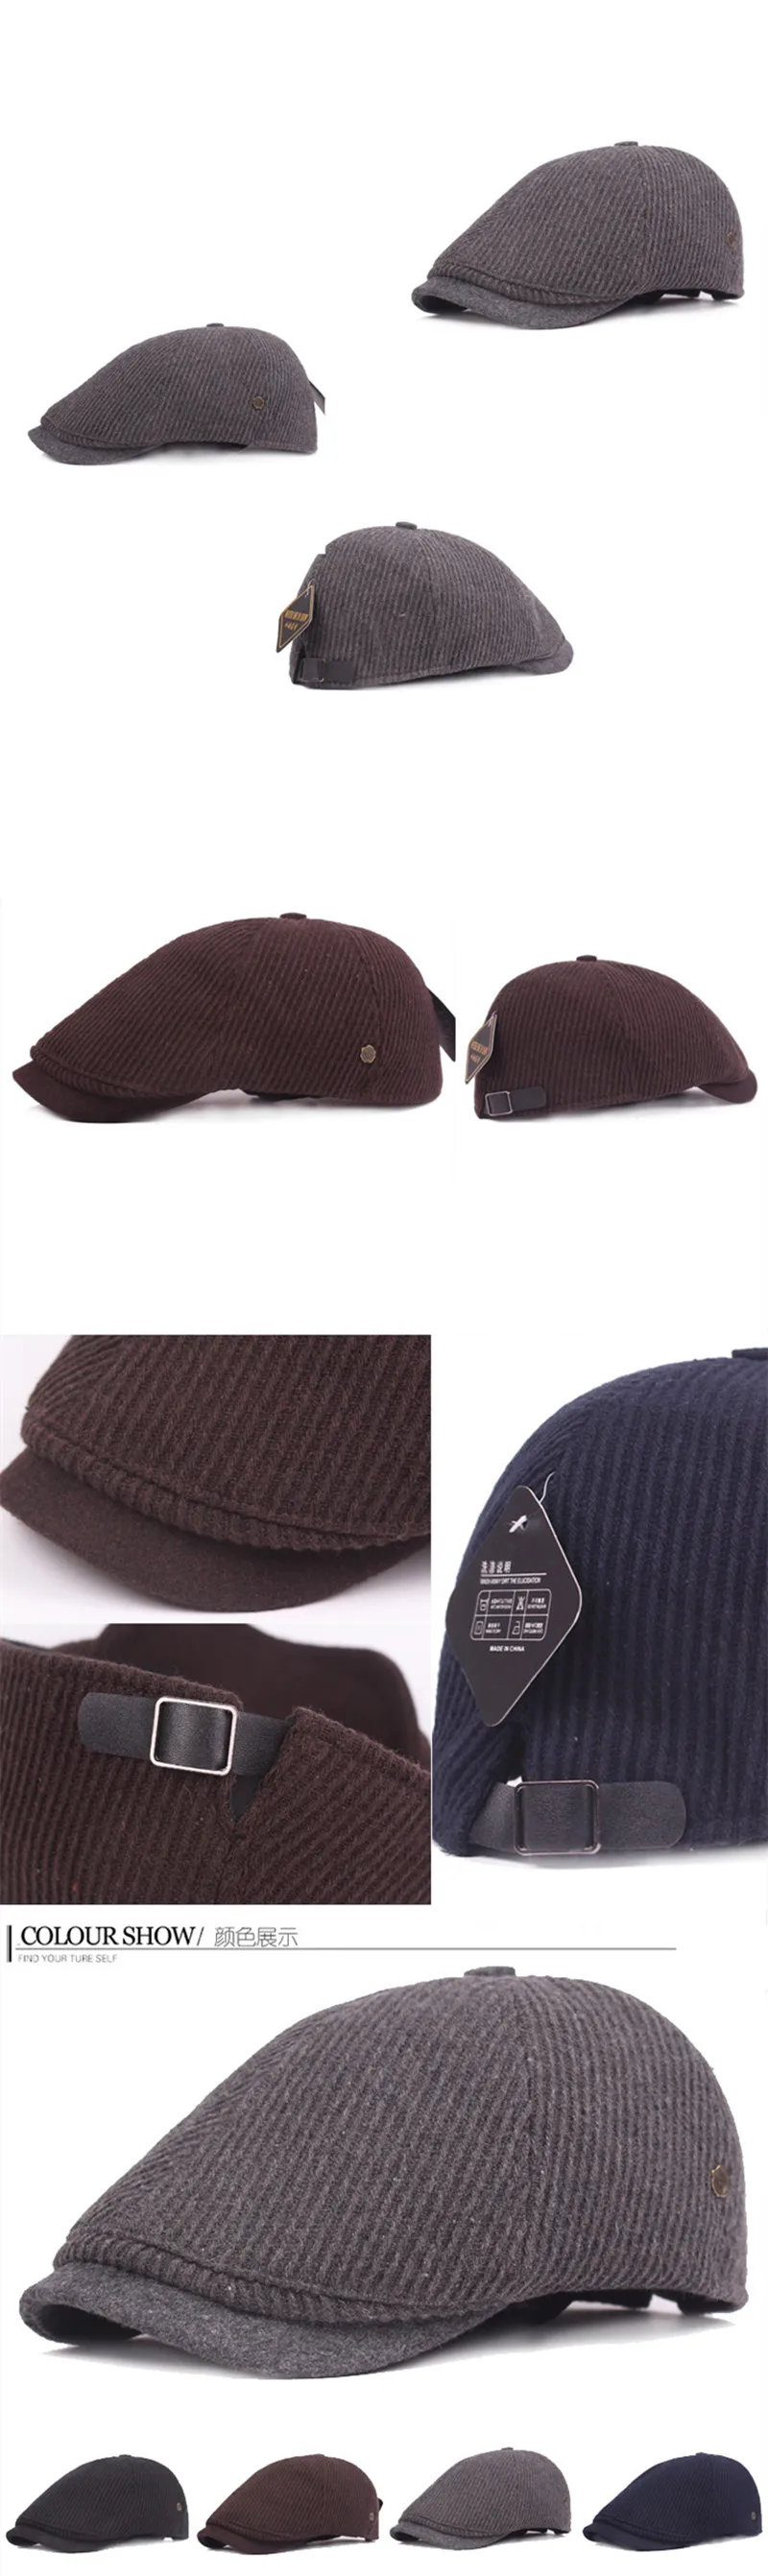 XdanqinX регулируемый размер мужская шапка зимние теплые береты шерстяная шапка с язычком мужские шляпы сомбреро De Invierno